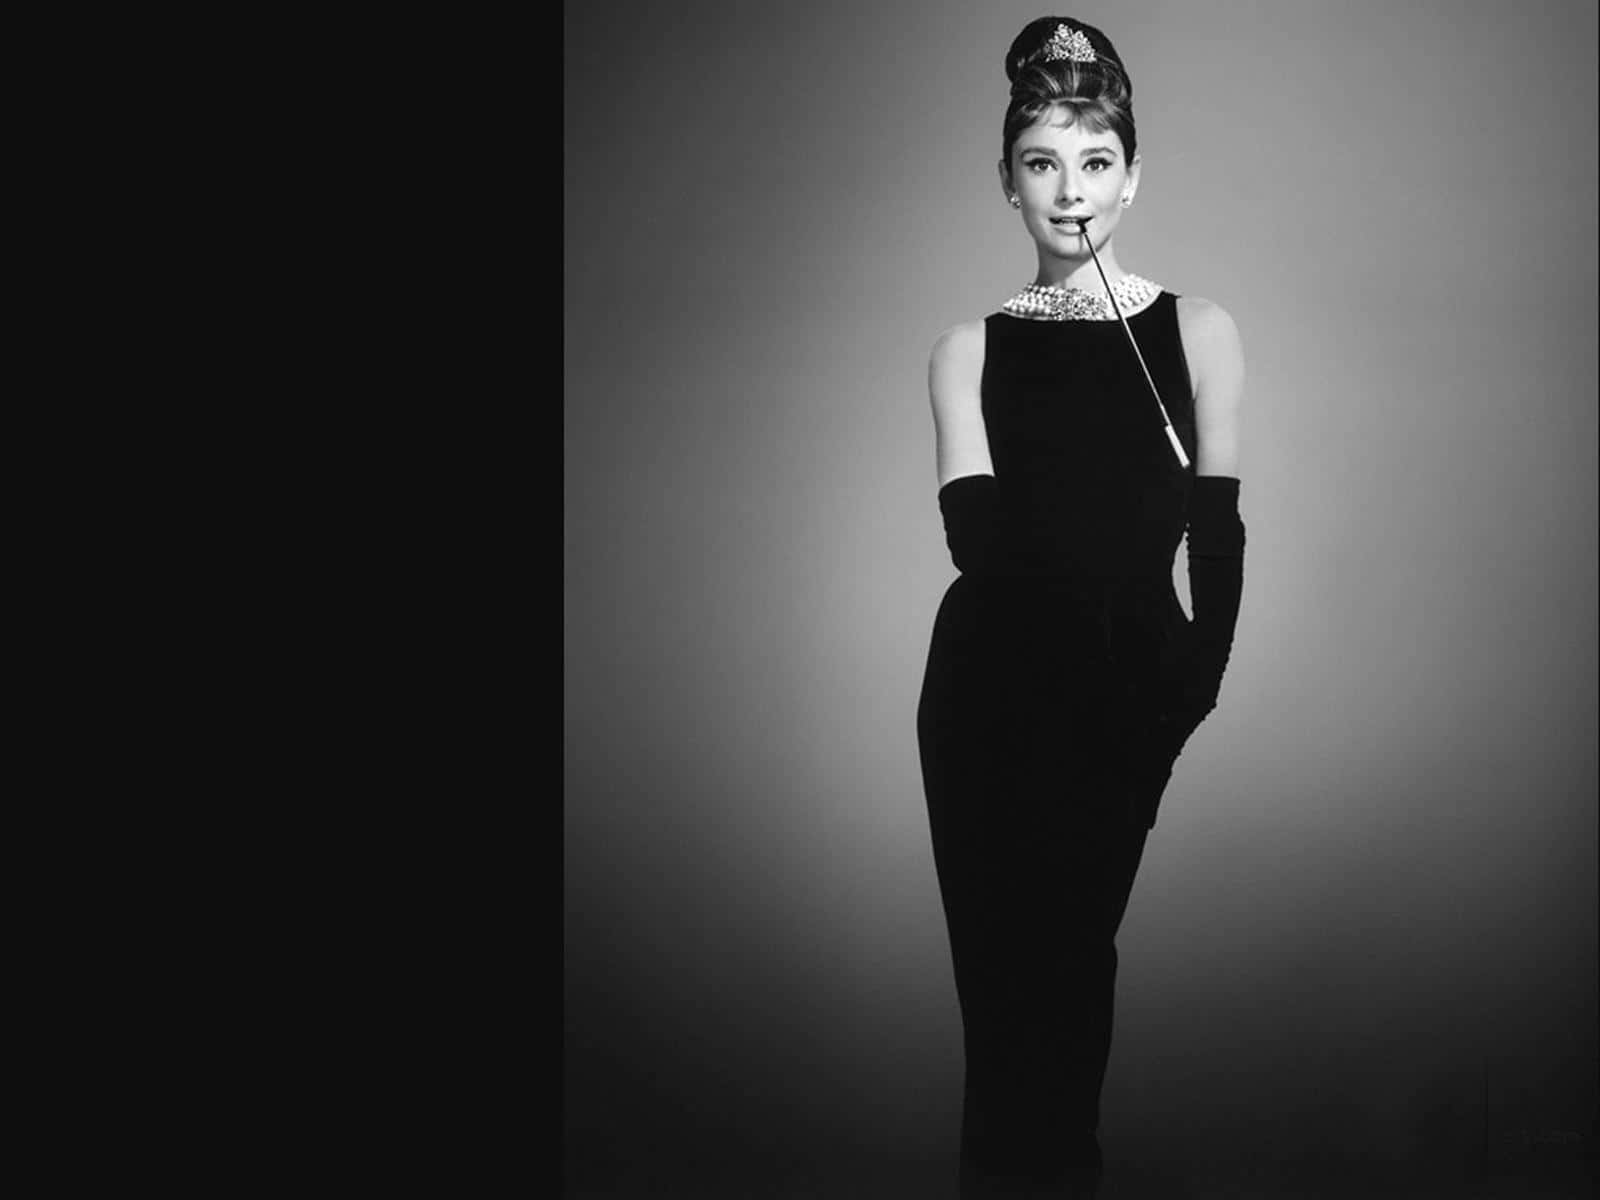 A timeless diva - Audrey Hepburn